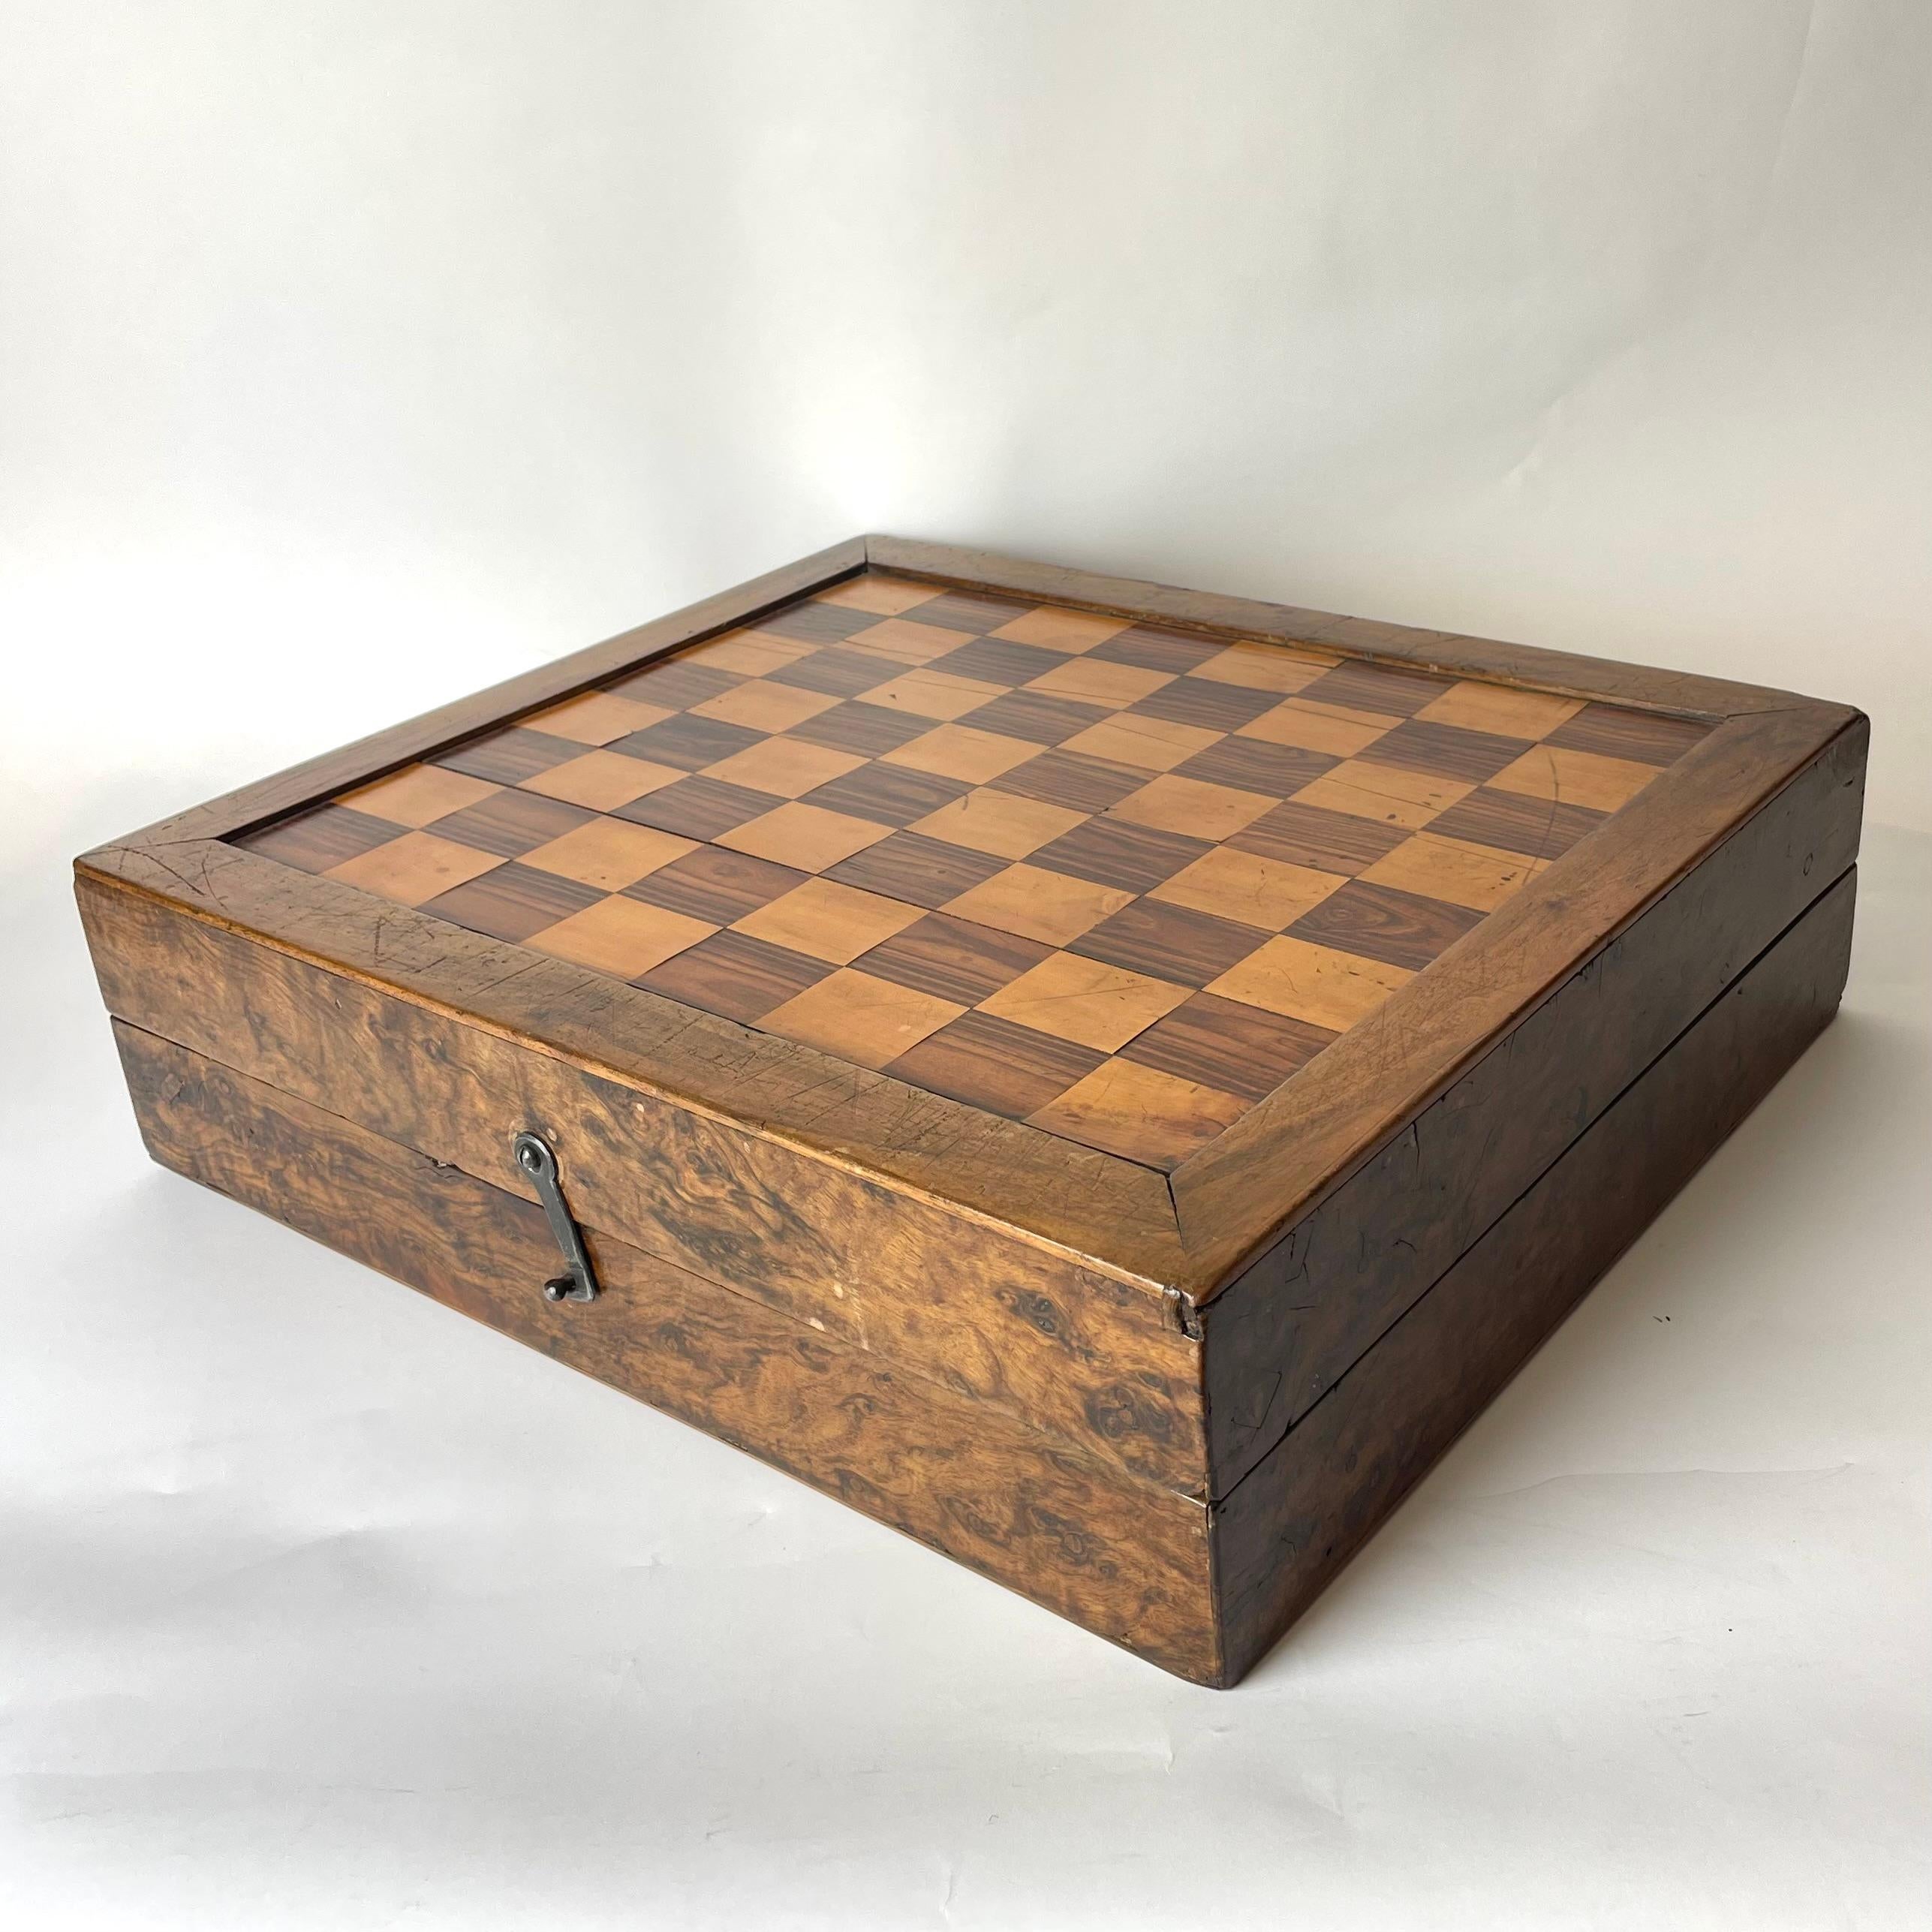 Une belle boîte de style baroque tardif utilisée pour les échecs, le backgammon et les pièces du jeu de Morris de Nine Men. Intérieur et extérieur richement décorés avec différents types de bois, notamment l'olivier, le noyer et le bouleau. Fin du